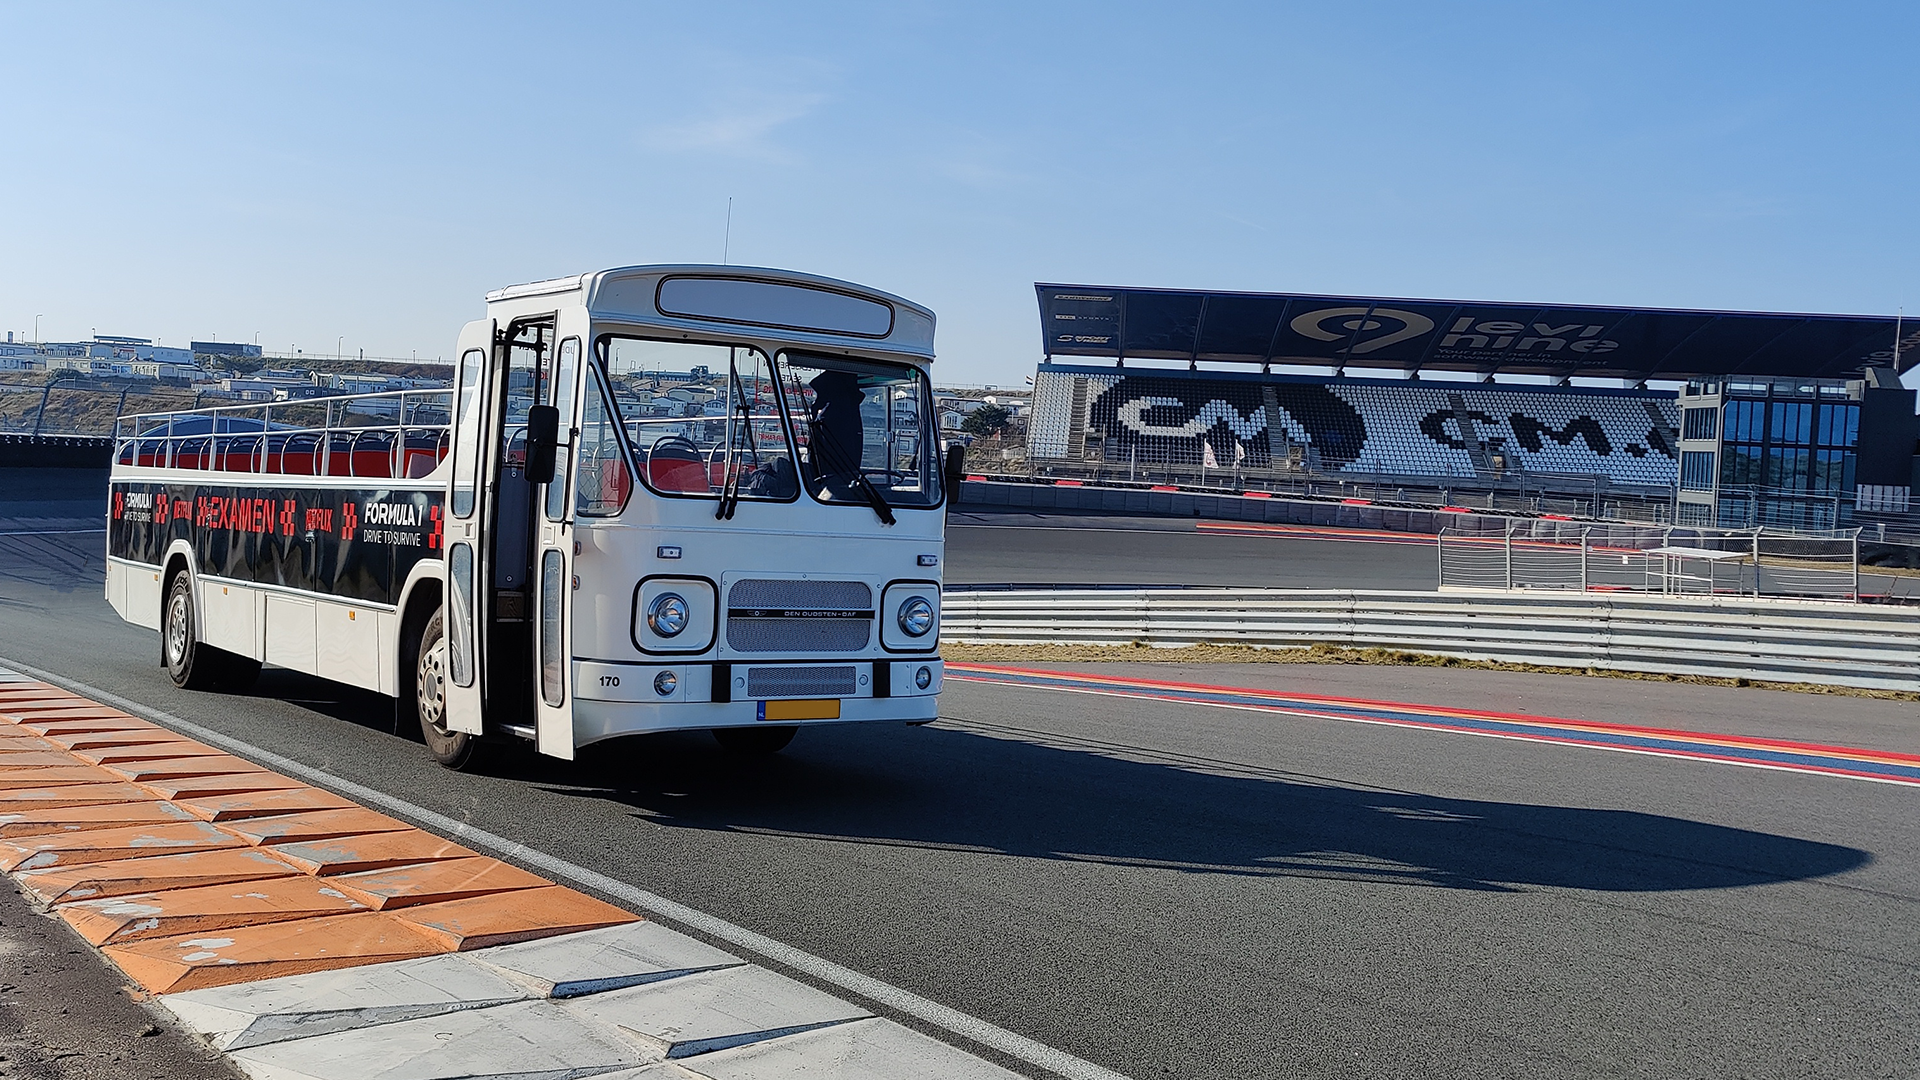 Foto: Cabrio touringcar - Zandvoort, Nederland